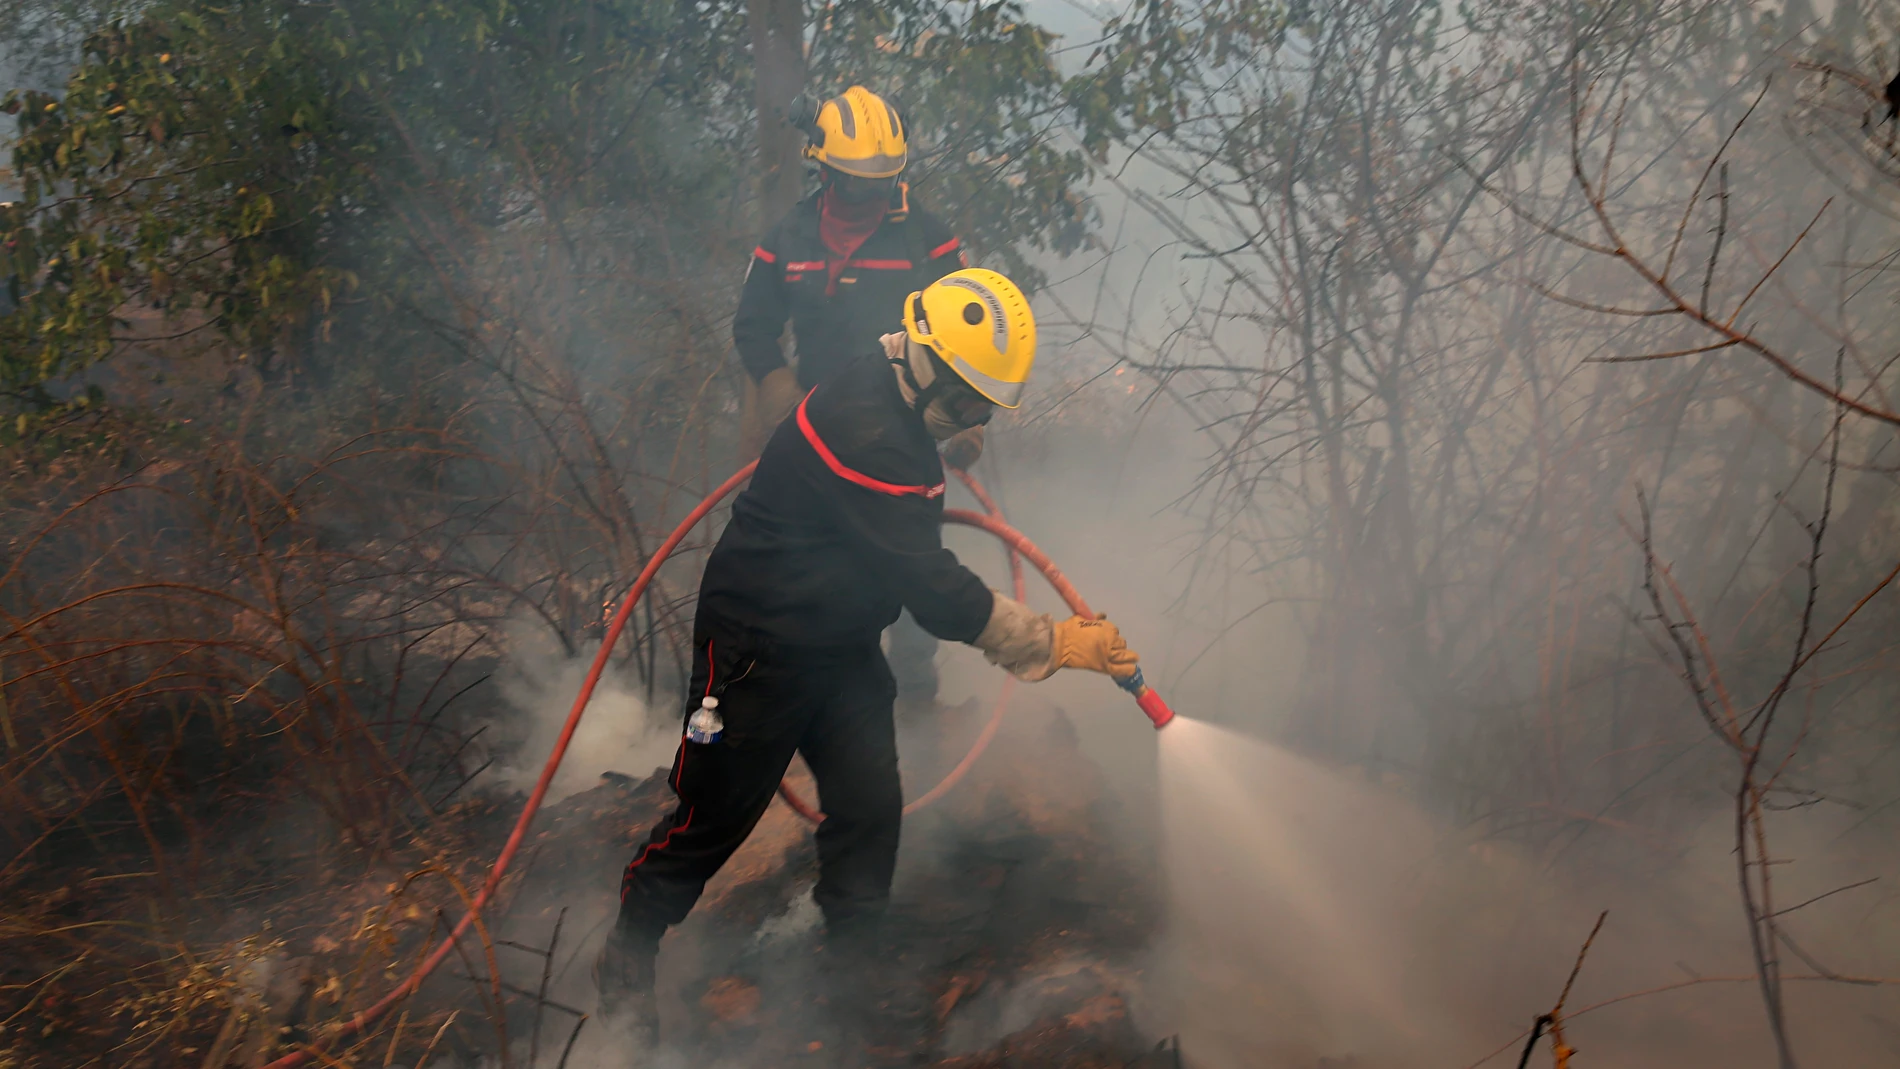 Bomberos franceses trabajan para extinguir el incendio cerca de Atenas (Grecia)